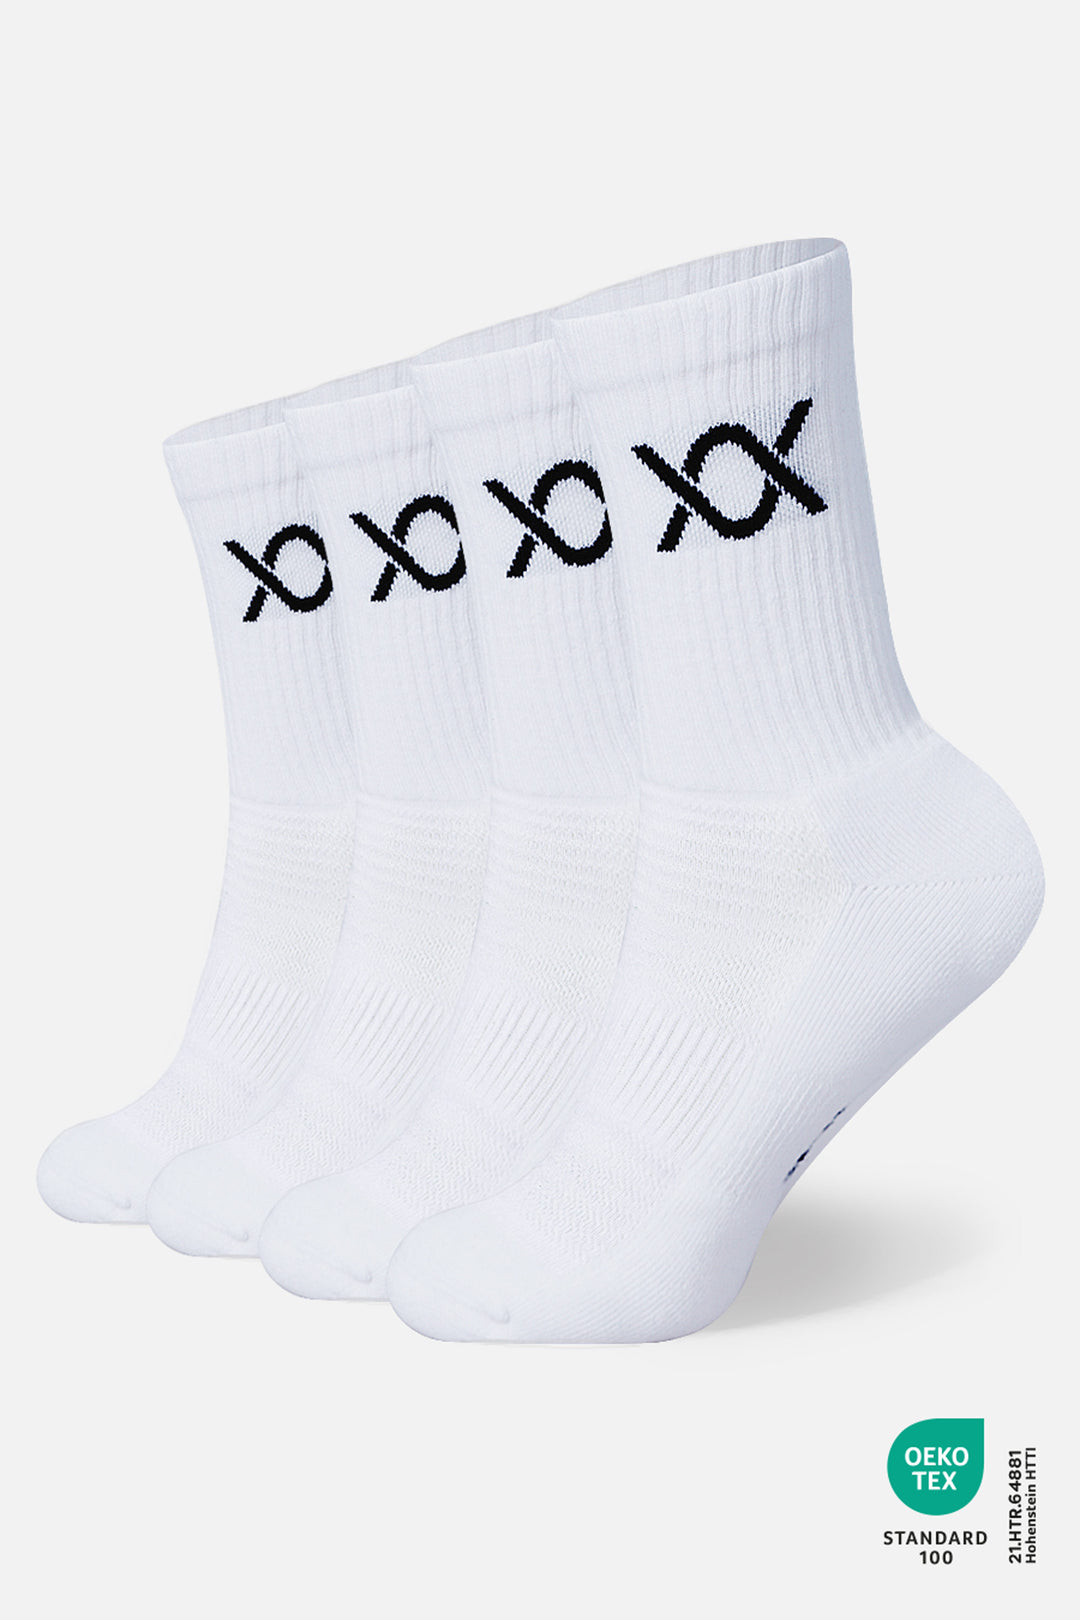 DIXXSON Crew Tennis Socken - 6er Pack - weiß -  Unisex für Damen und Herren - Bio-Baumwolle 